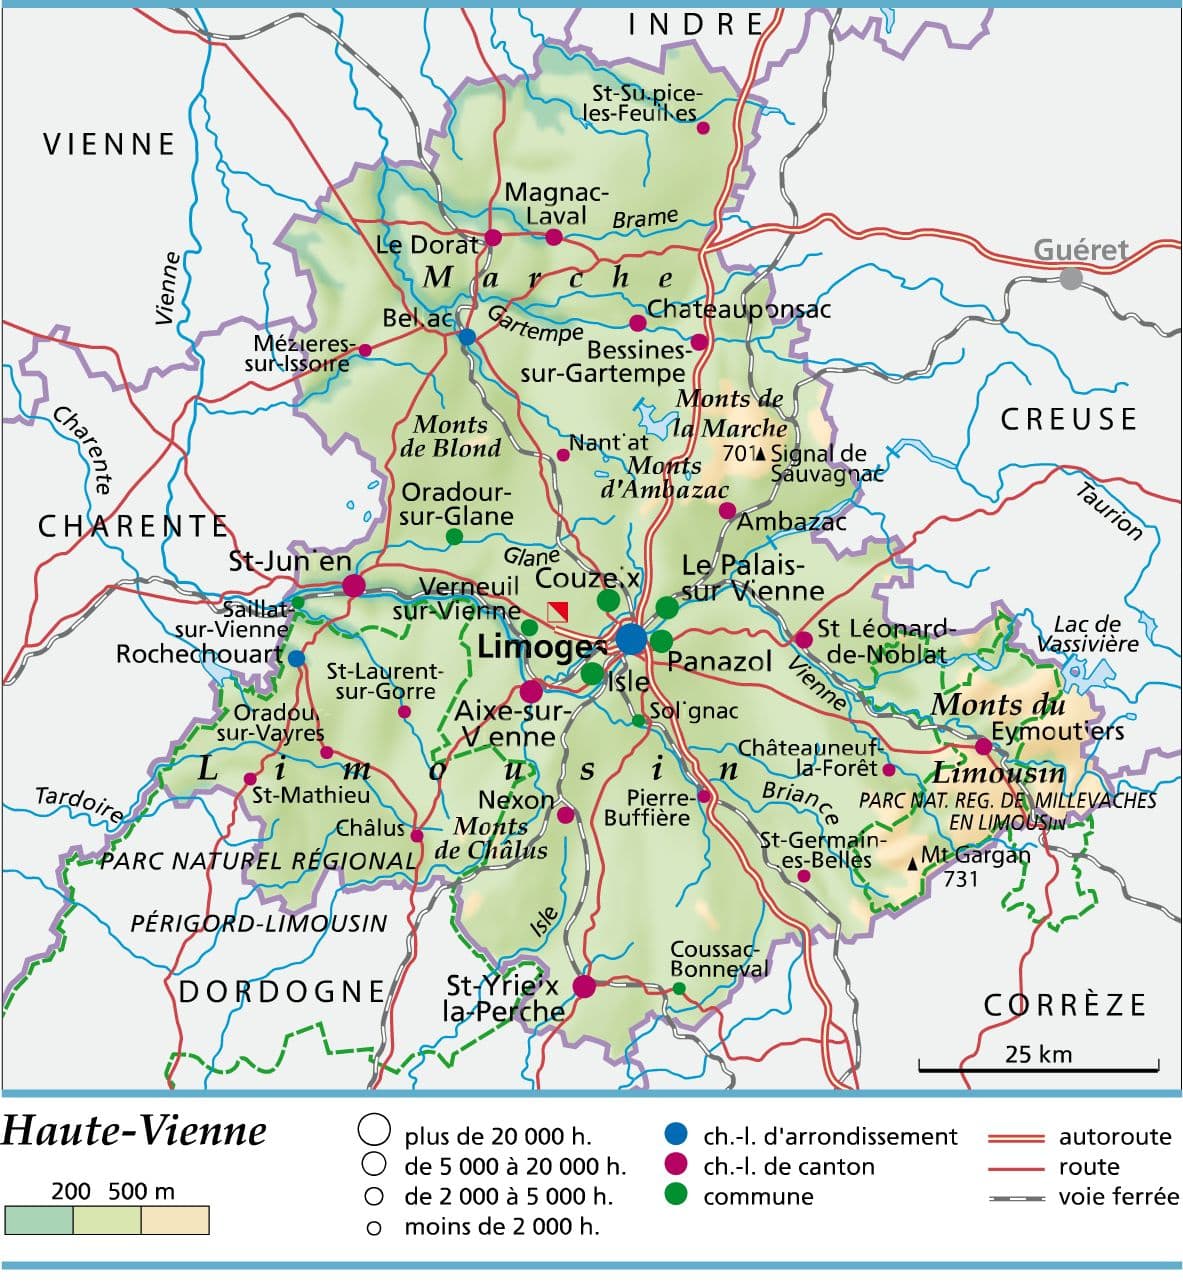 Haute-Vienne – Média LAROUSSE